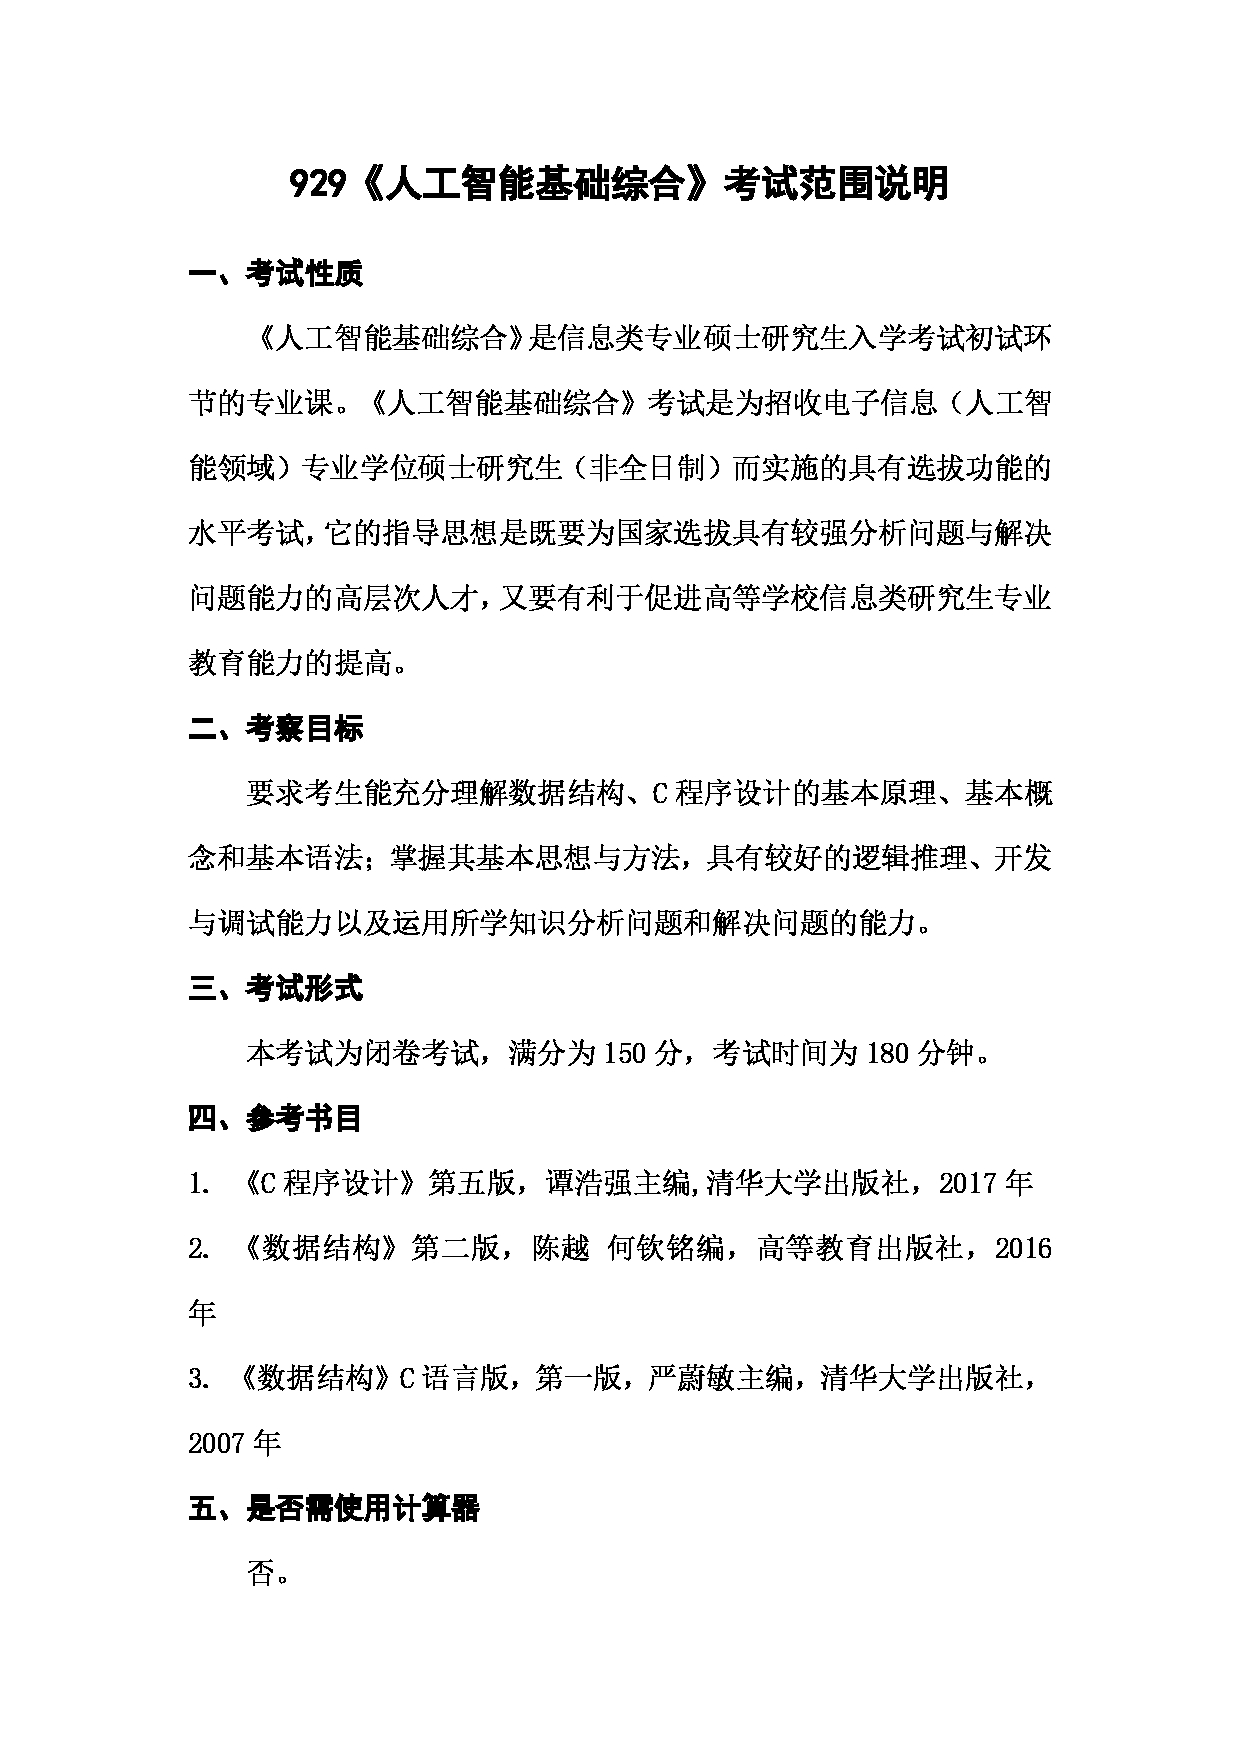 上海海洋大学2023年考研自命题科目 929《人工智能基础综合》 考试范围第1页